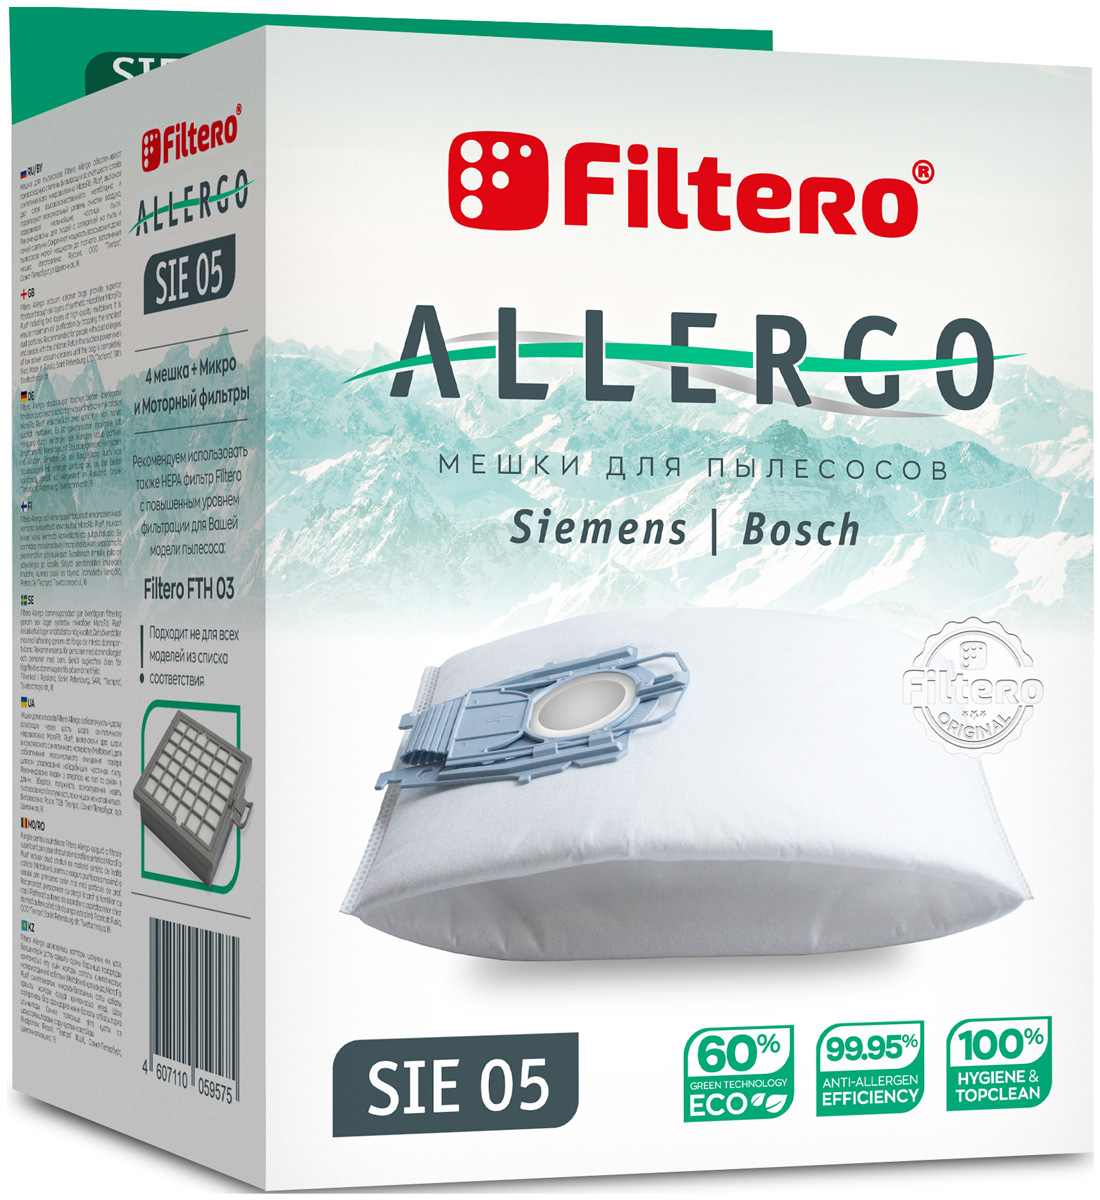 пылесборники filtero fls 01 s bag allergo 4 шт моторный фильтр и микрофильтр Пылесборники Filtero SIE 05 Allergo 4 шт. + моторный фильтр и микрофильтр